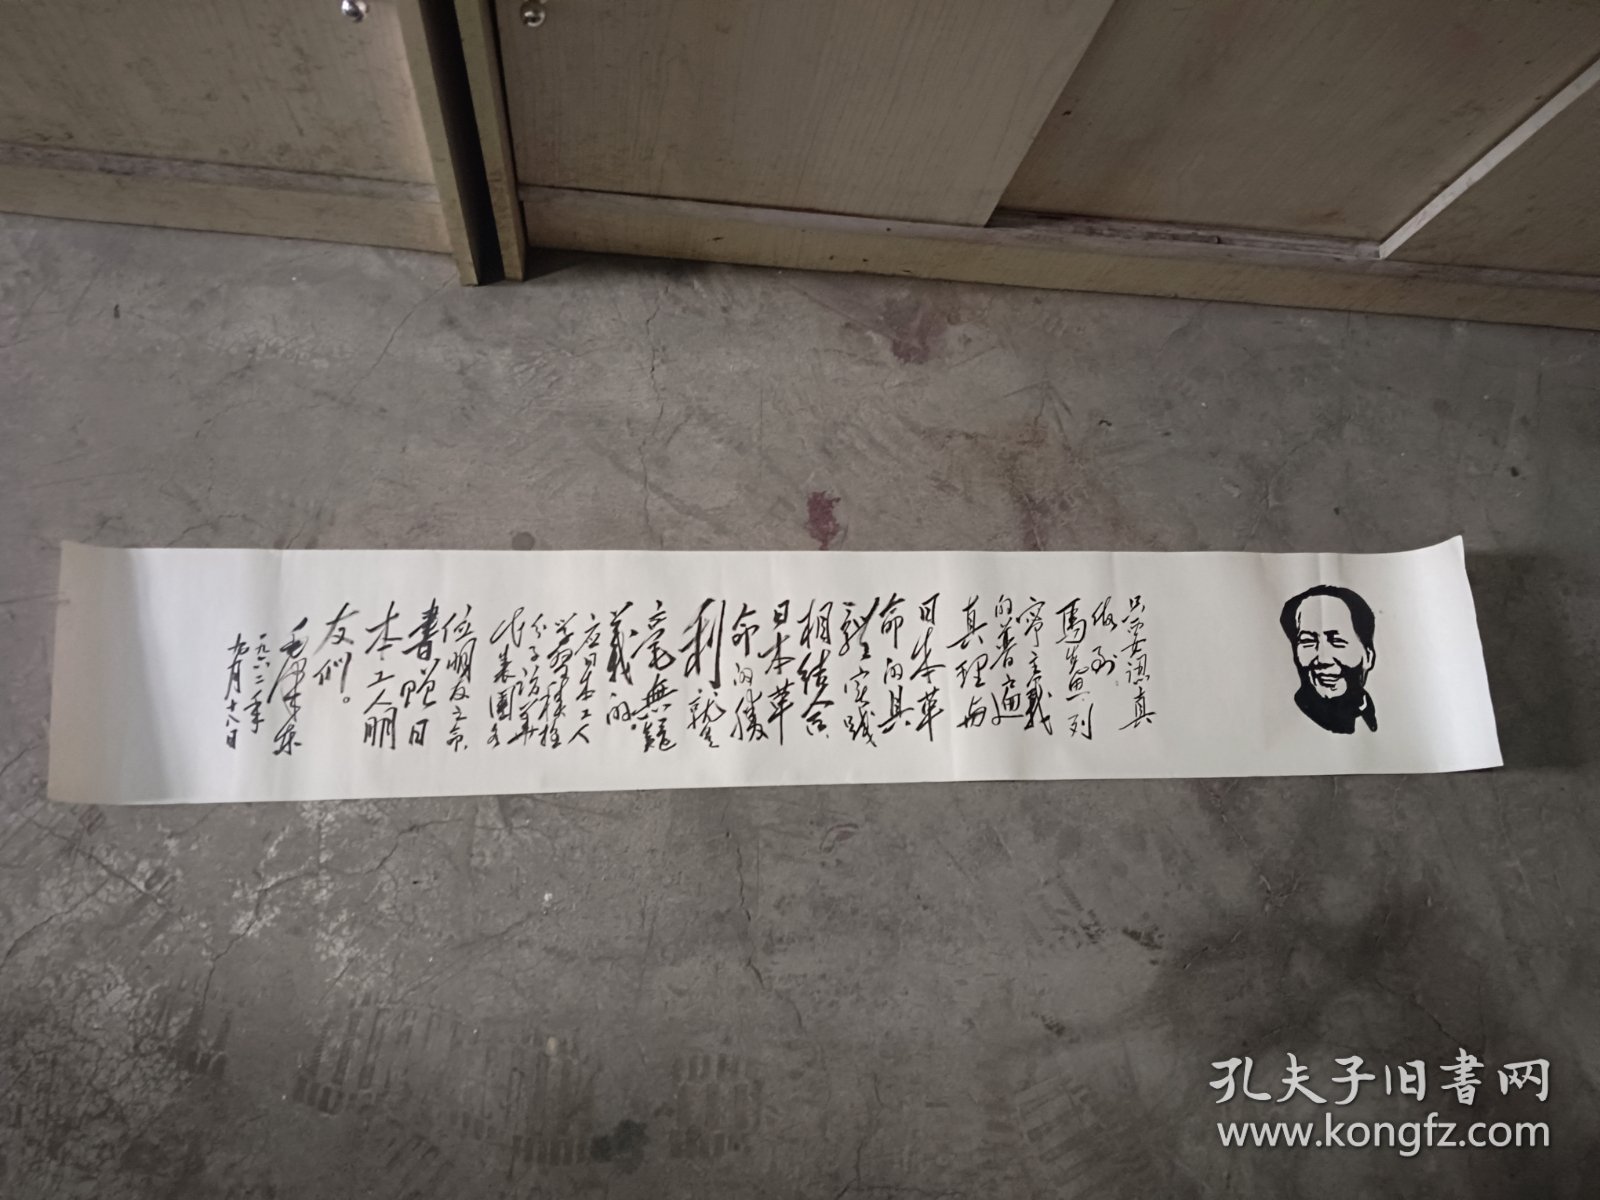 纯手绘毛主席语录一张，尺寸大概123厘米乘20.5厘米左右